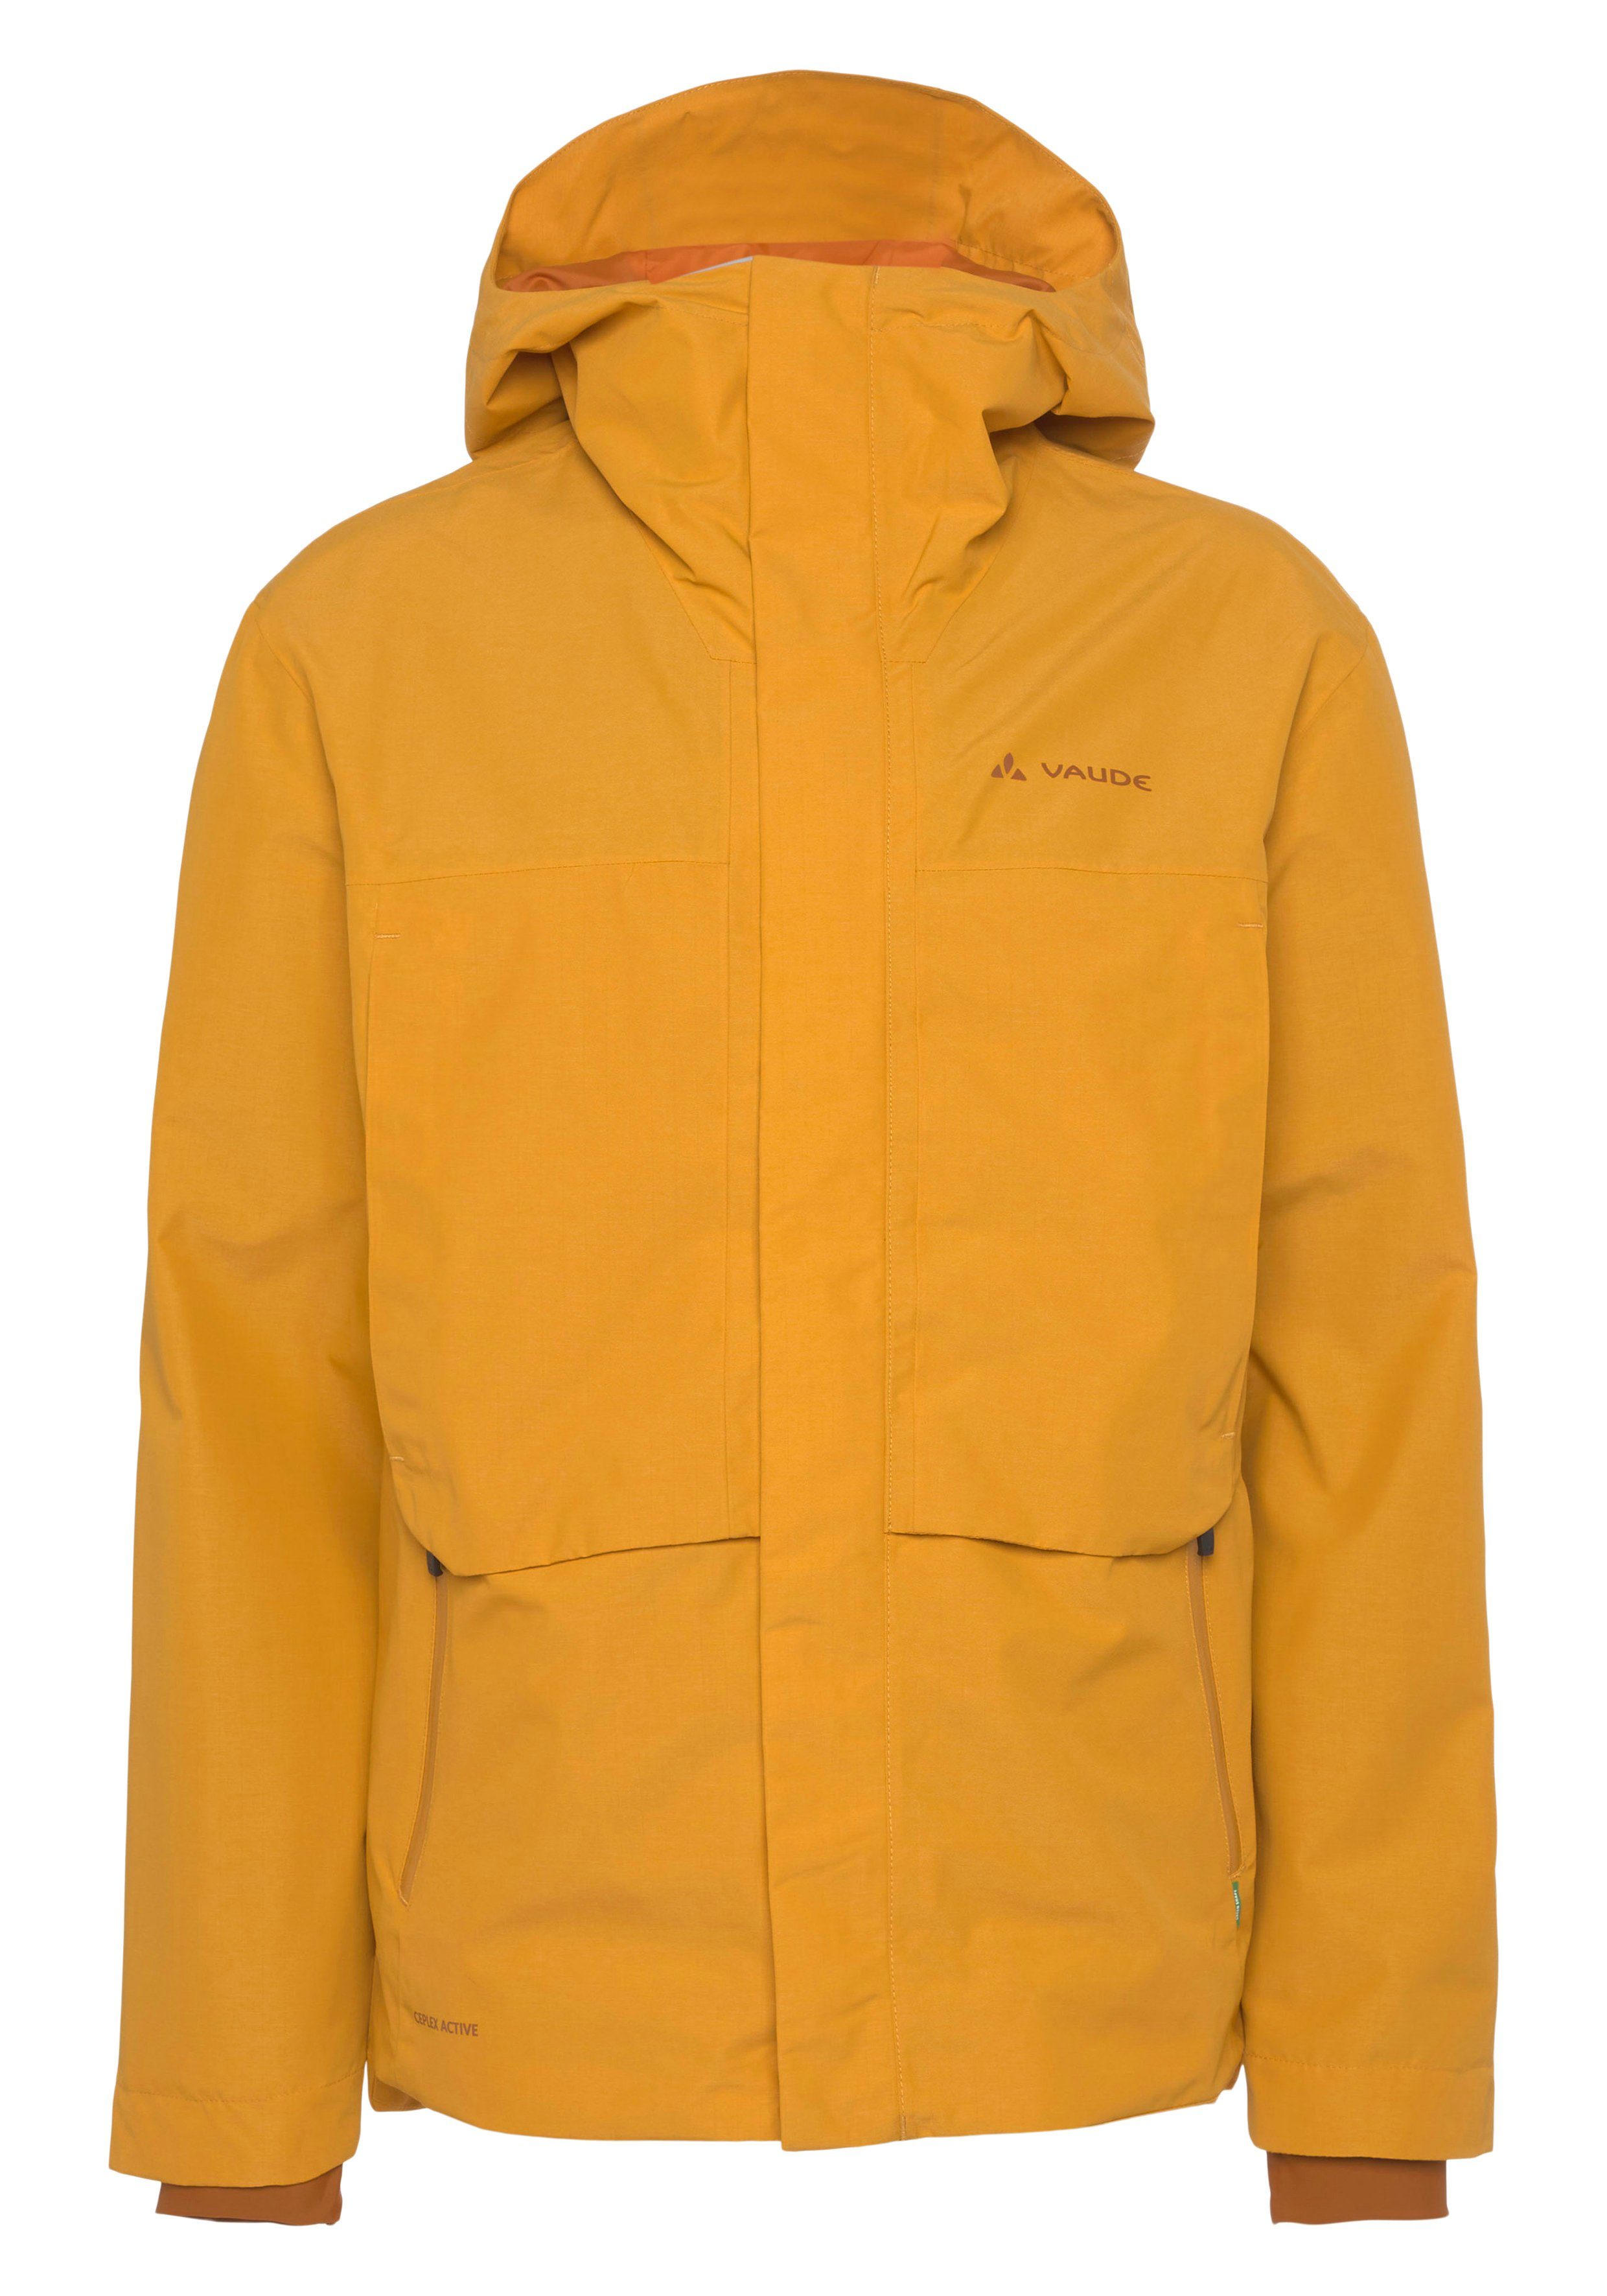 Rain burnt VAUDE Men's Comyou yellow Regenjacke Pro Jacket